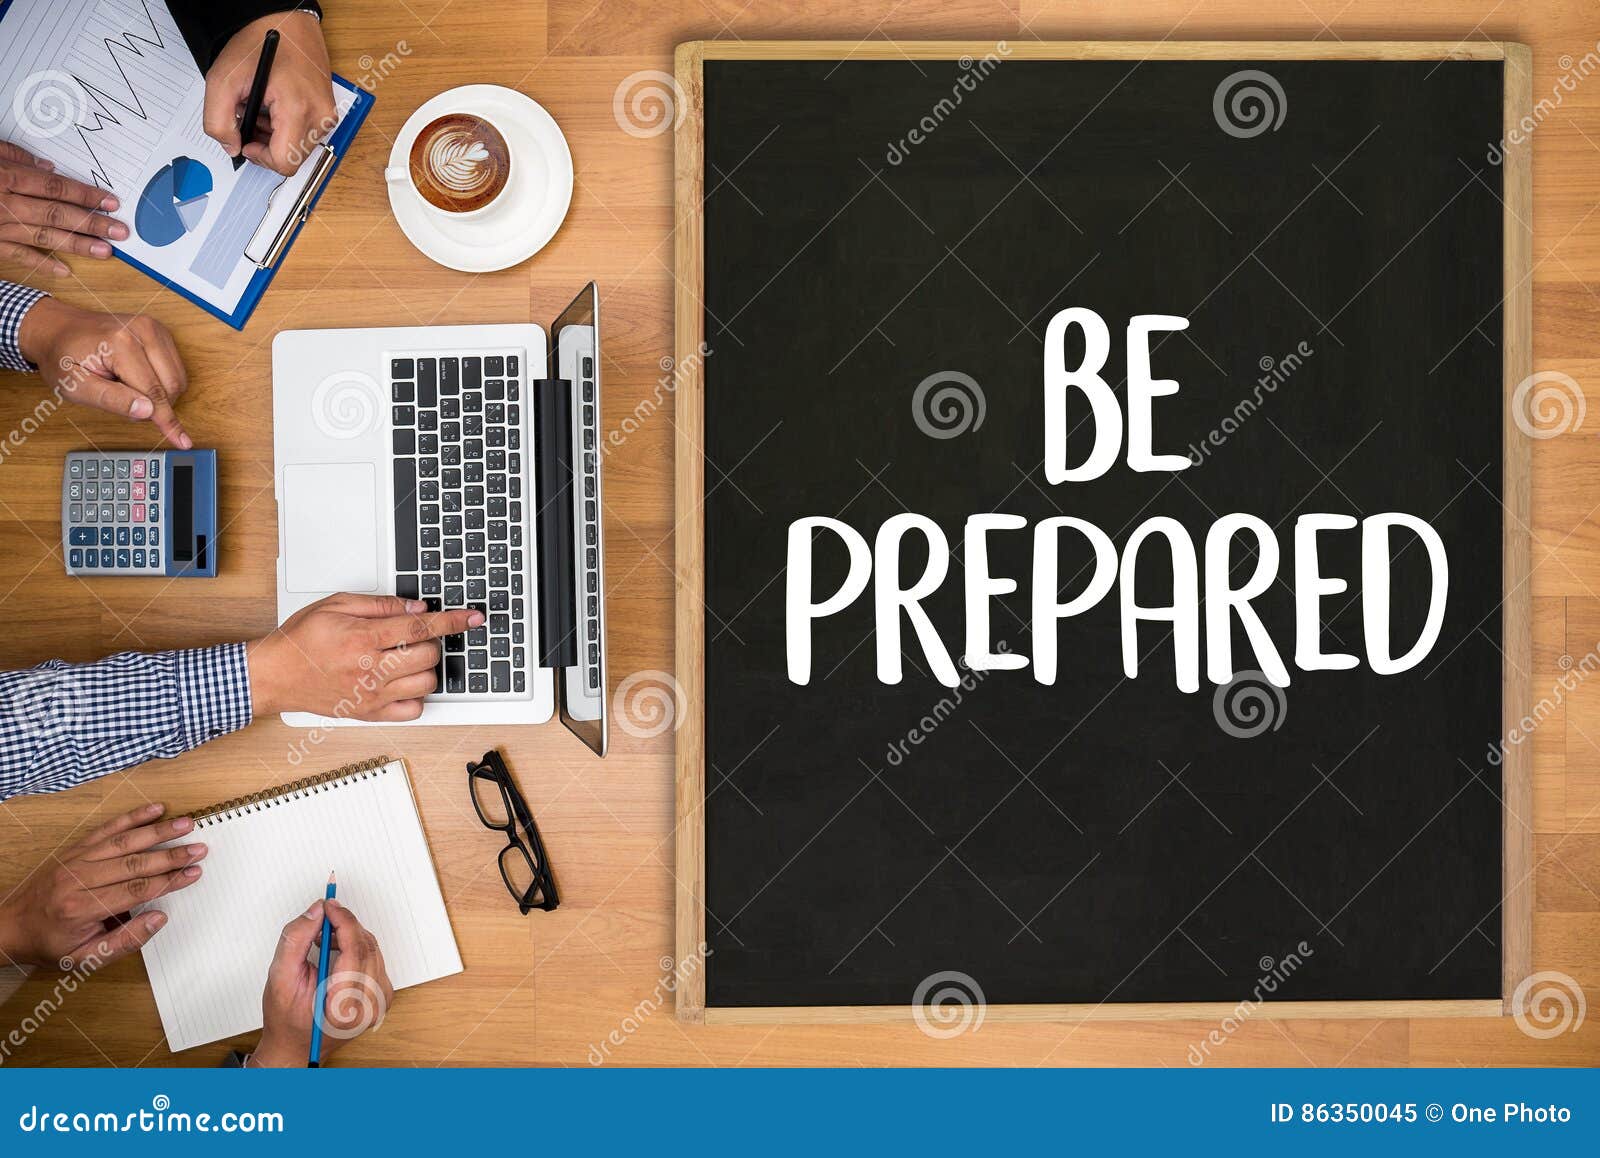 be prepared concept , preparation is the key plan, prepare, per